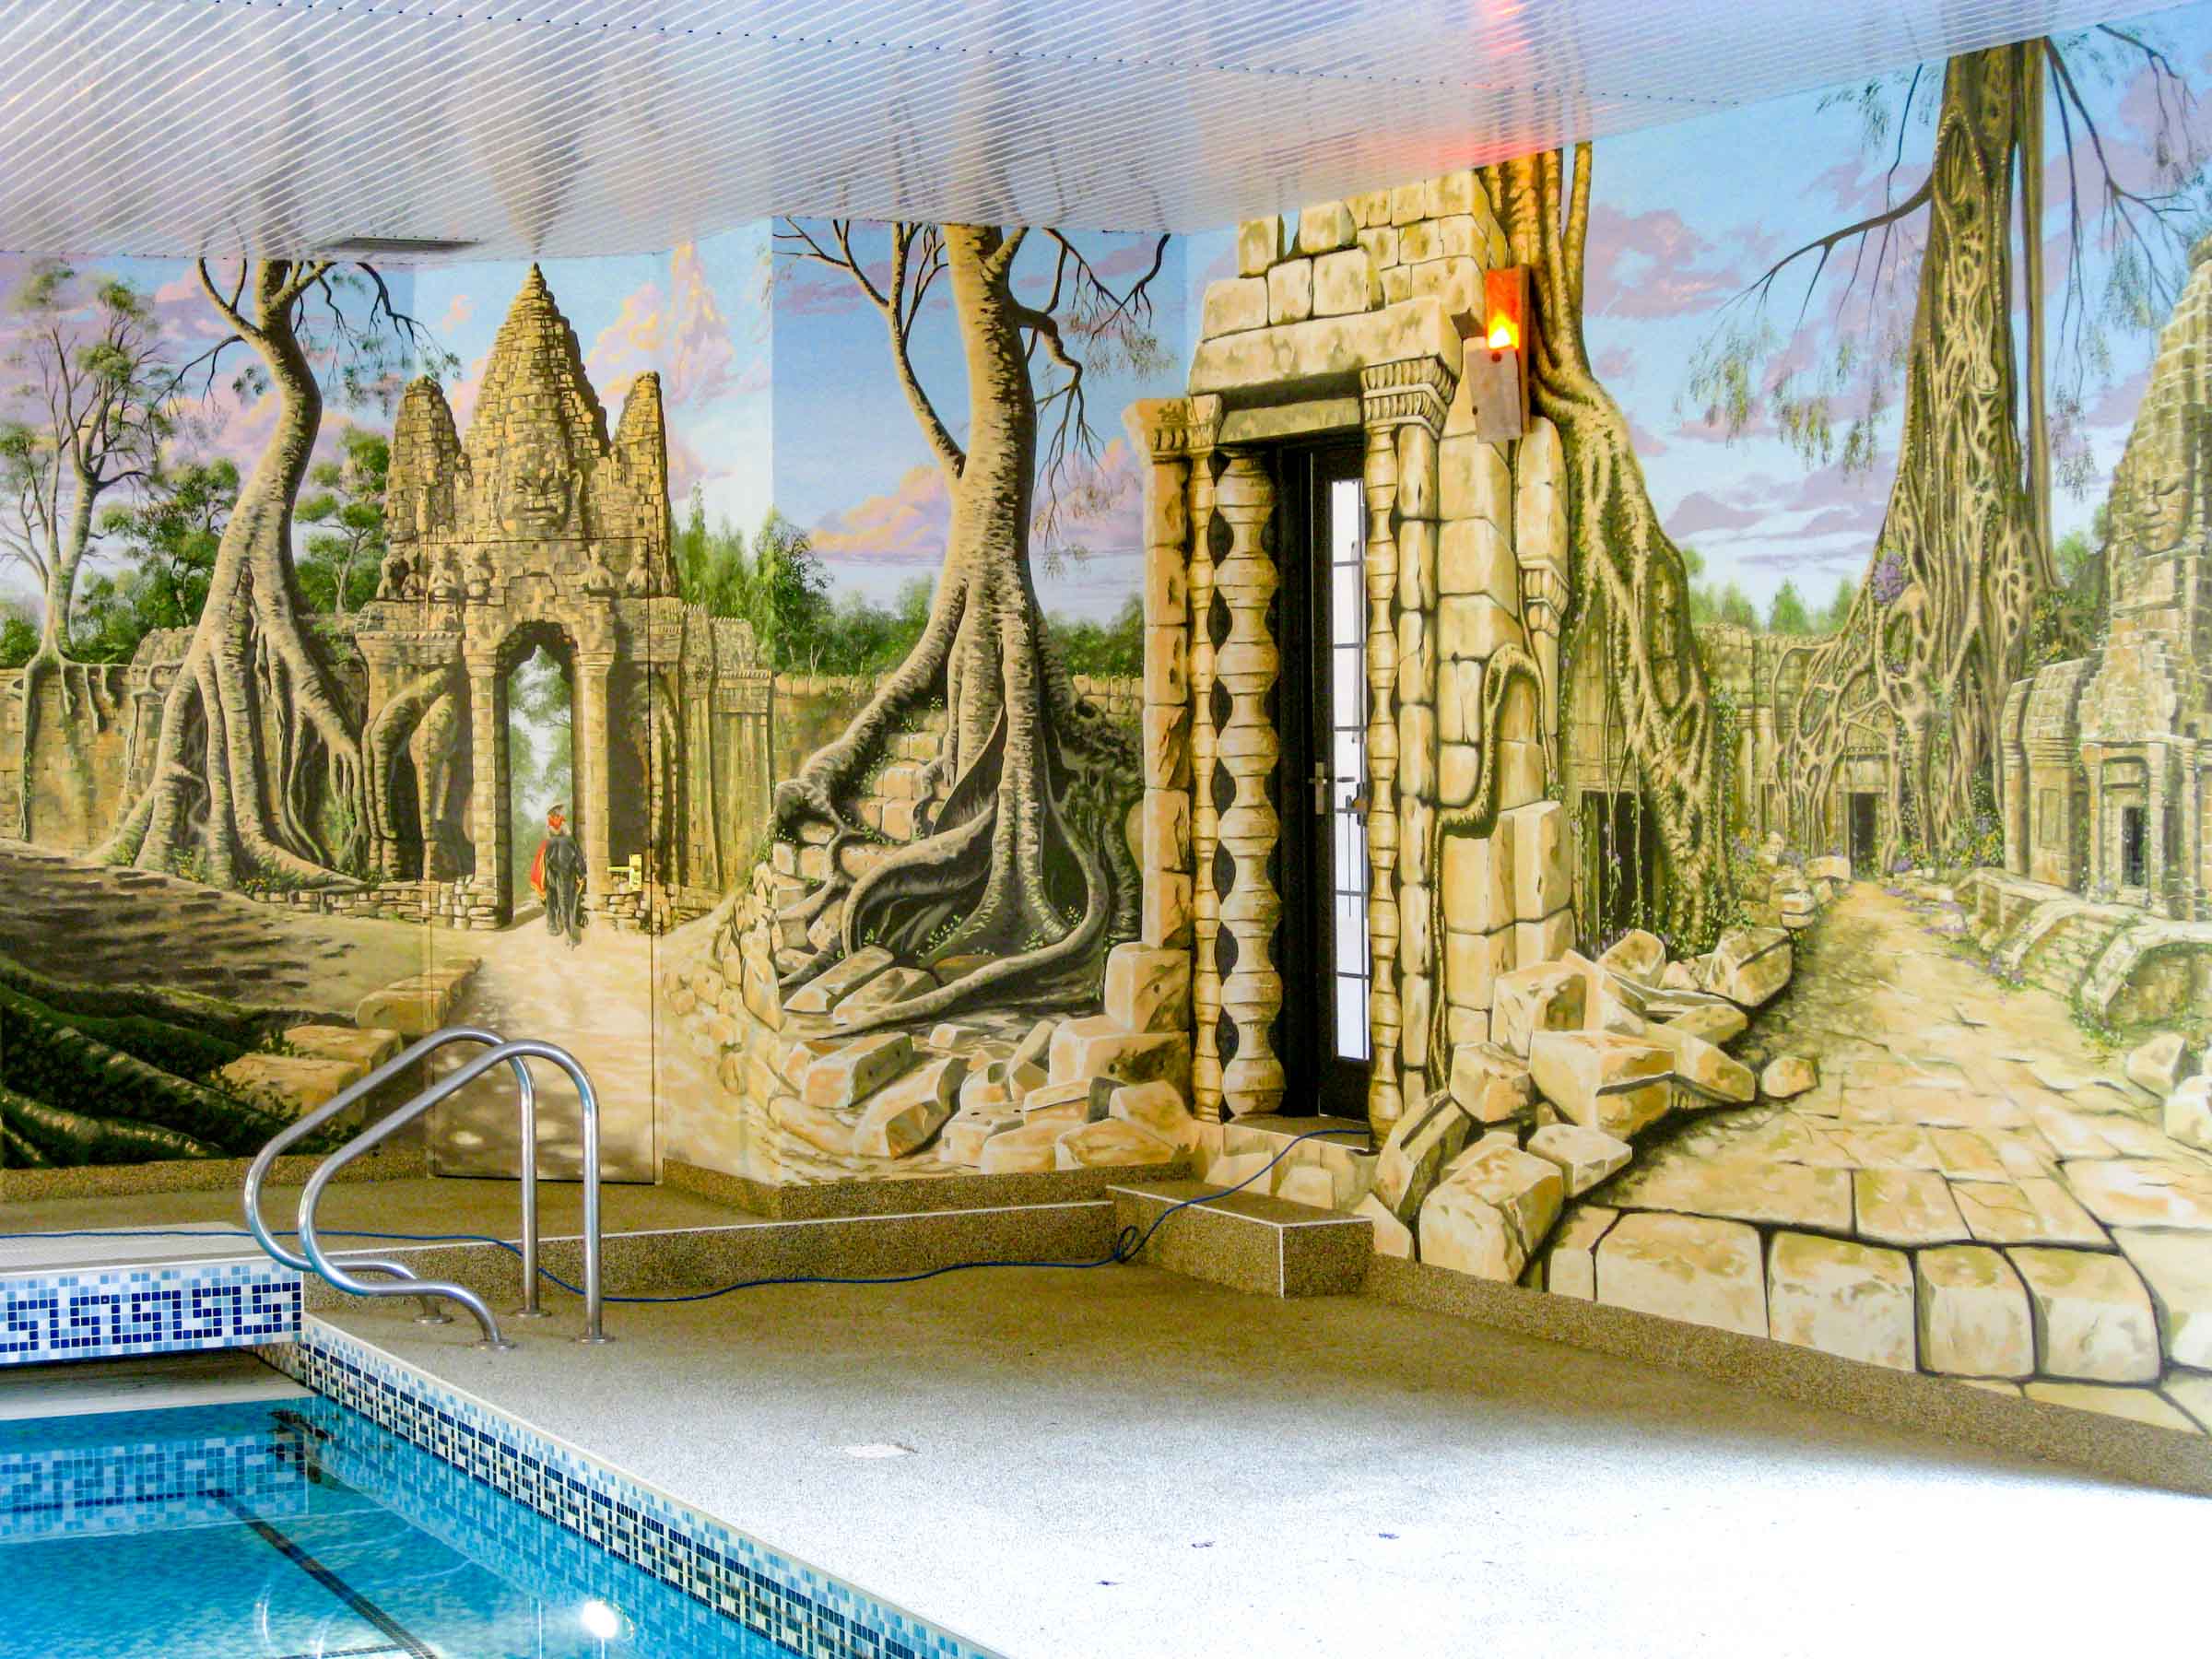 swimming pool mural of jungle temple ruins